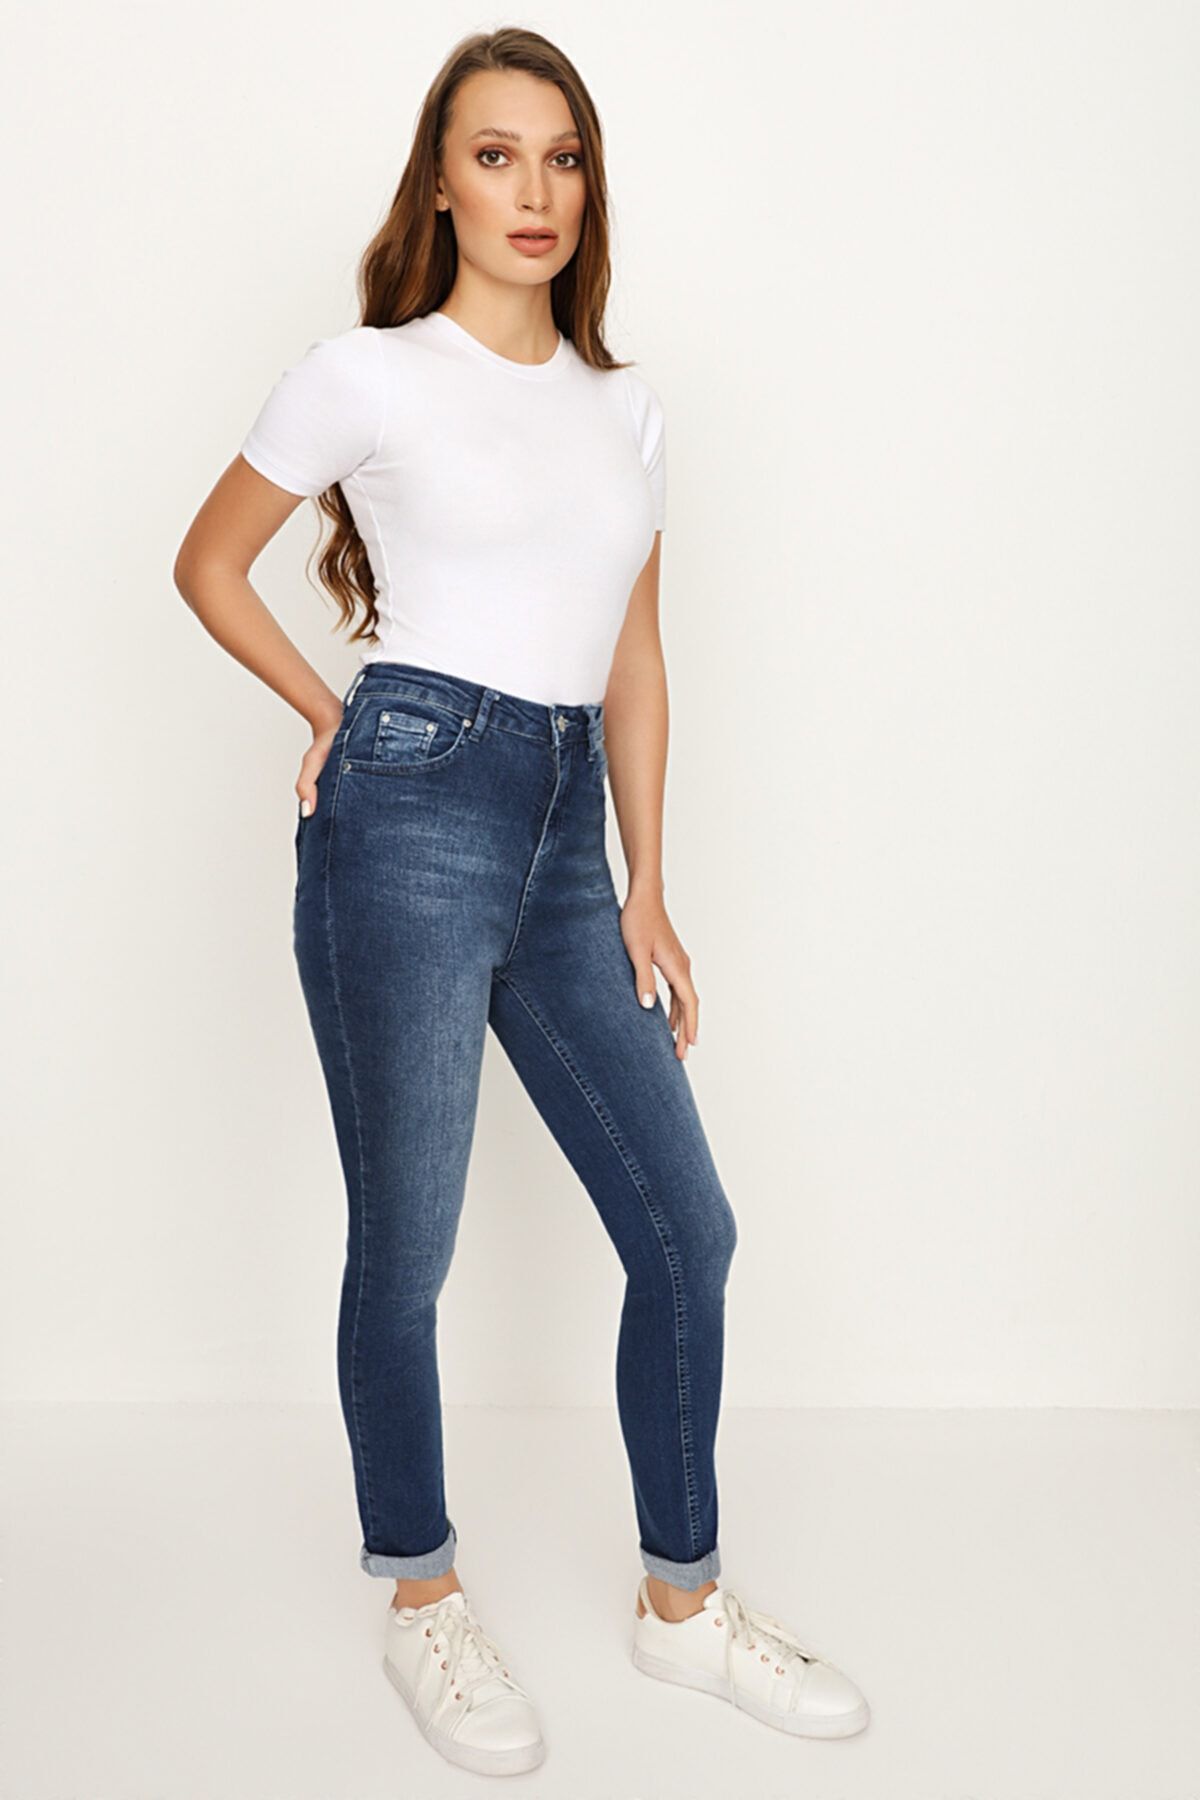 Select Moda Kadın Mavi Paçası Katlamalı Skinny Jeans